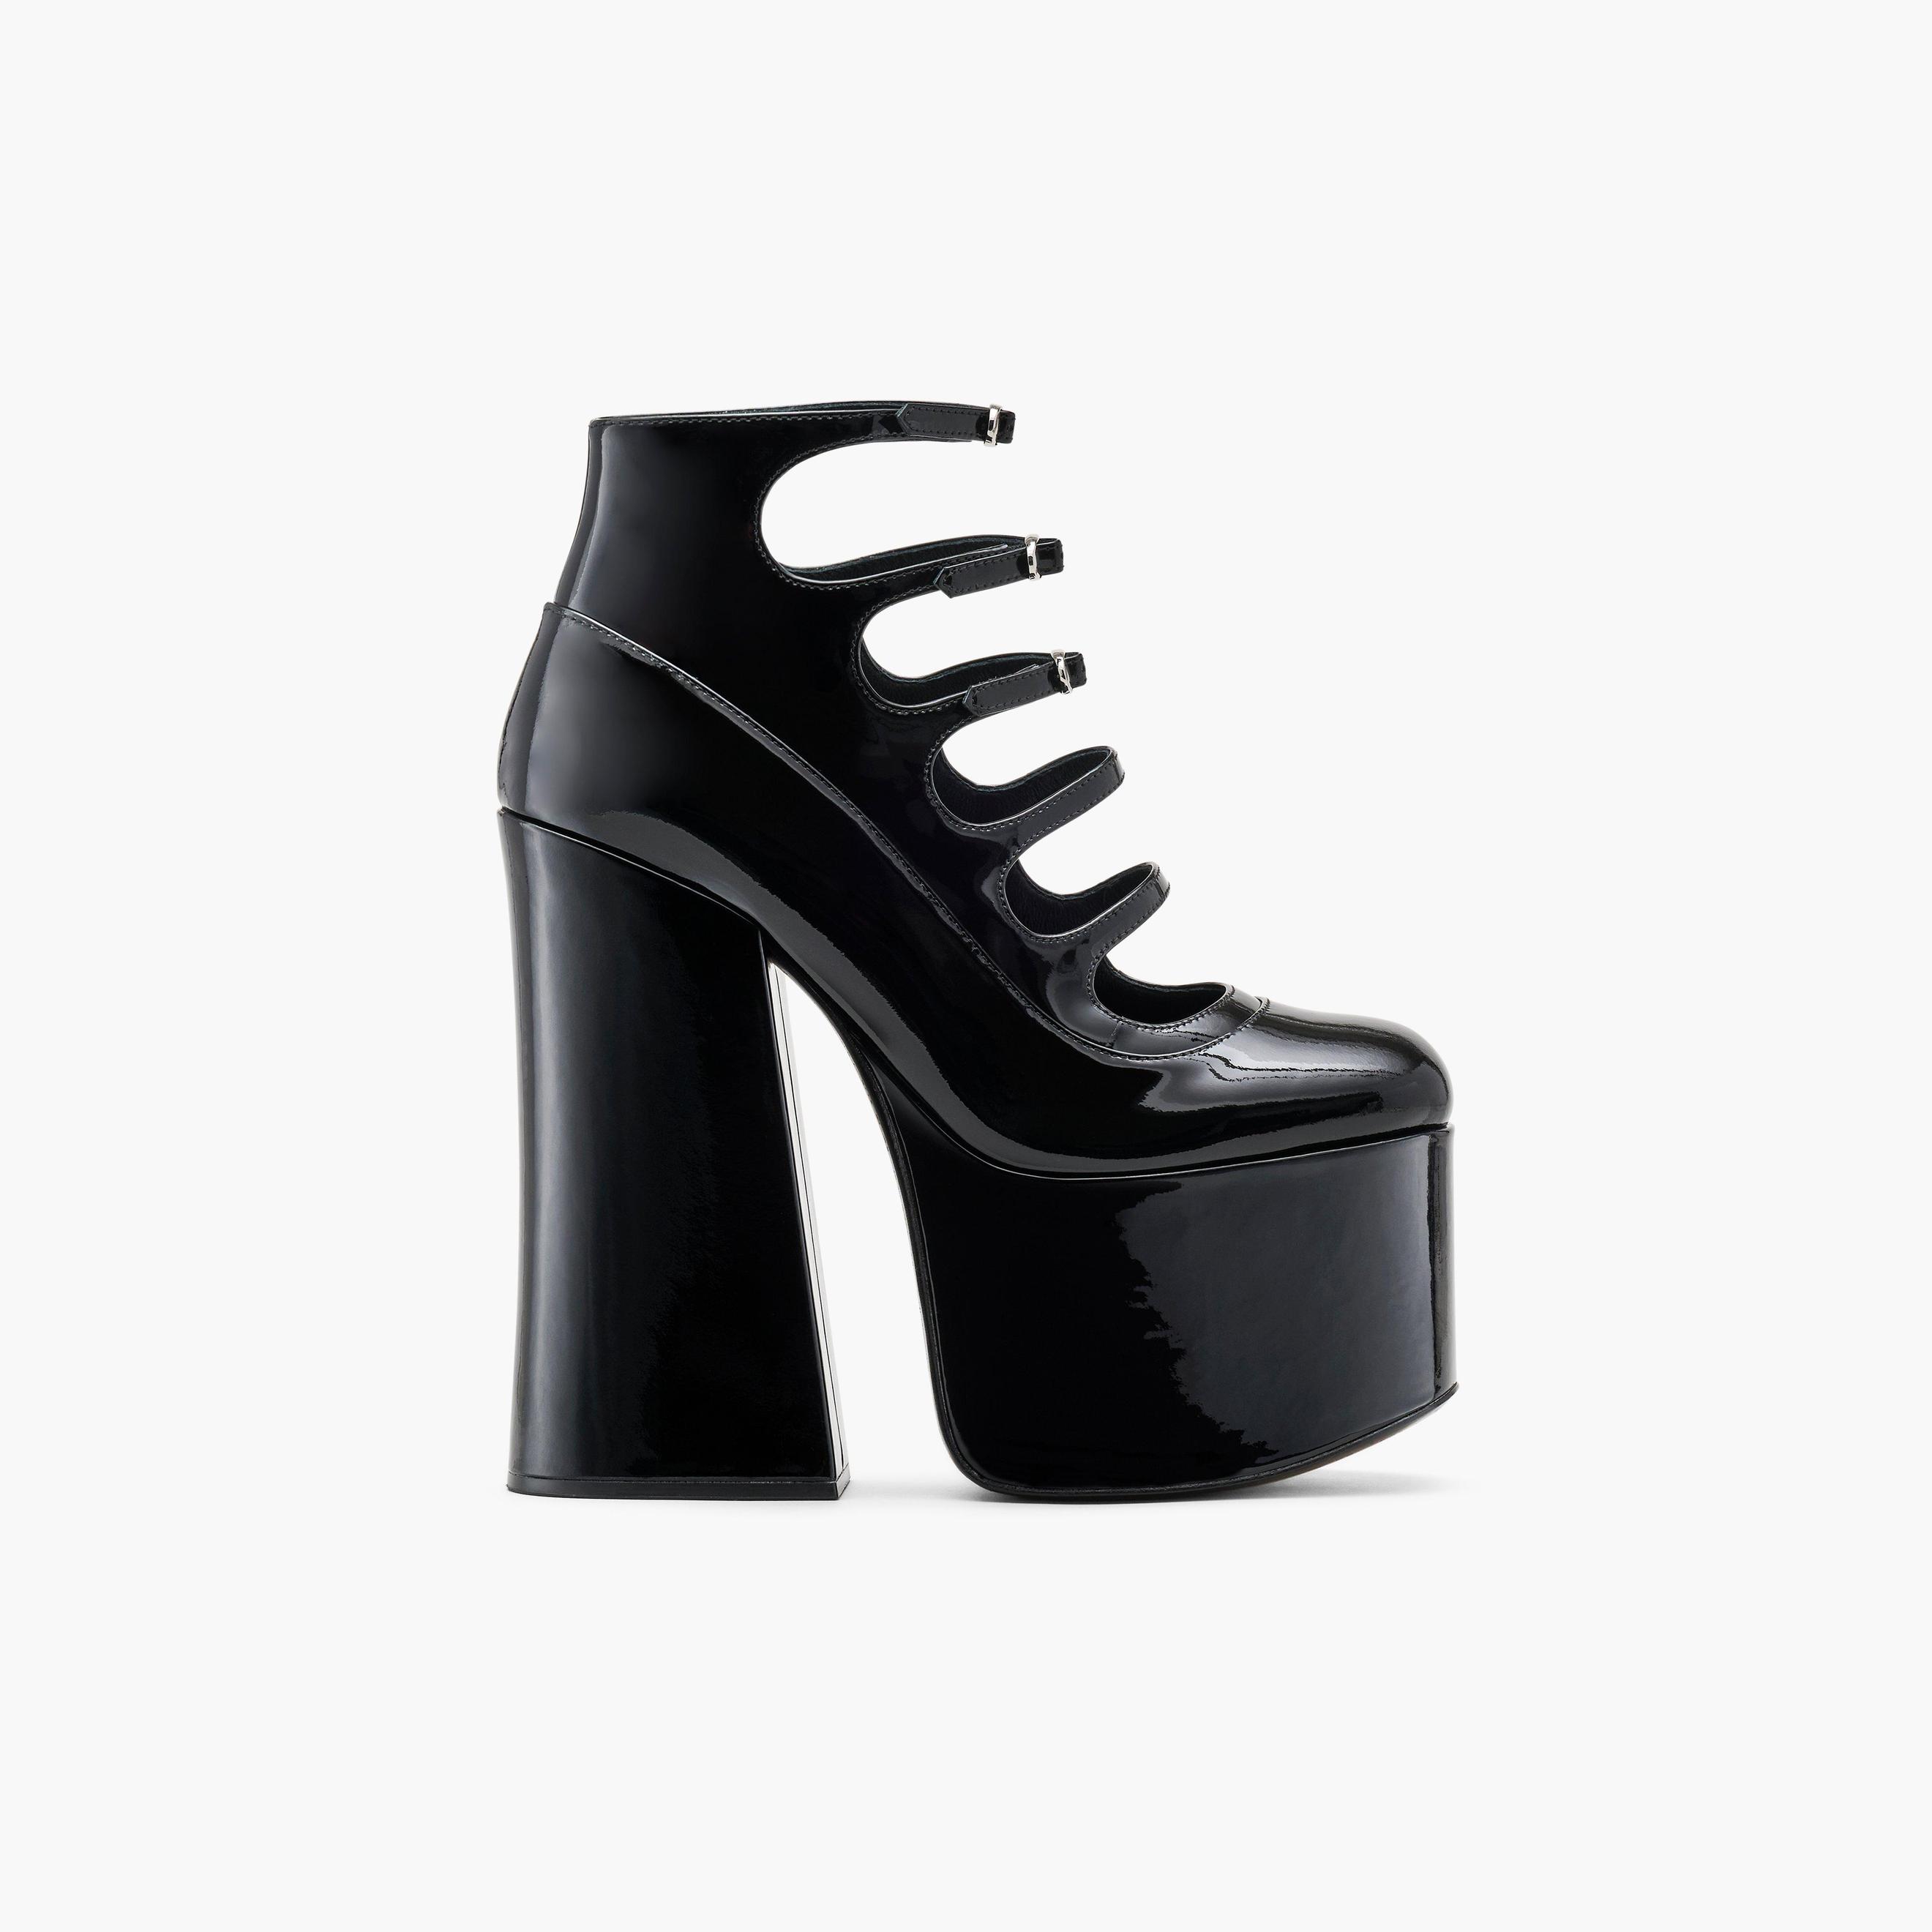 The Patent Leather Kiki Ankle Boot tuote hintaan 650€ liikkeestä Marc Jacobs